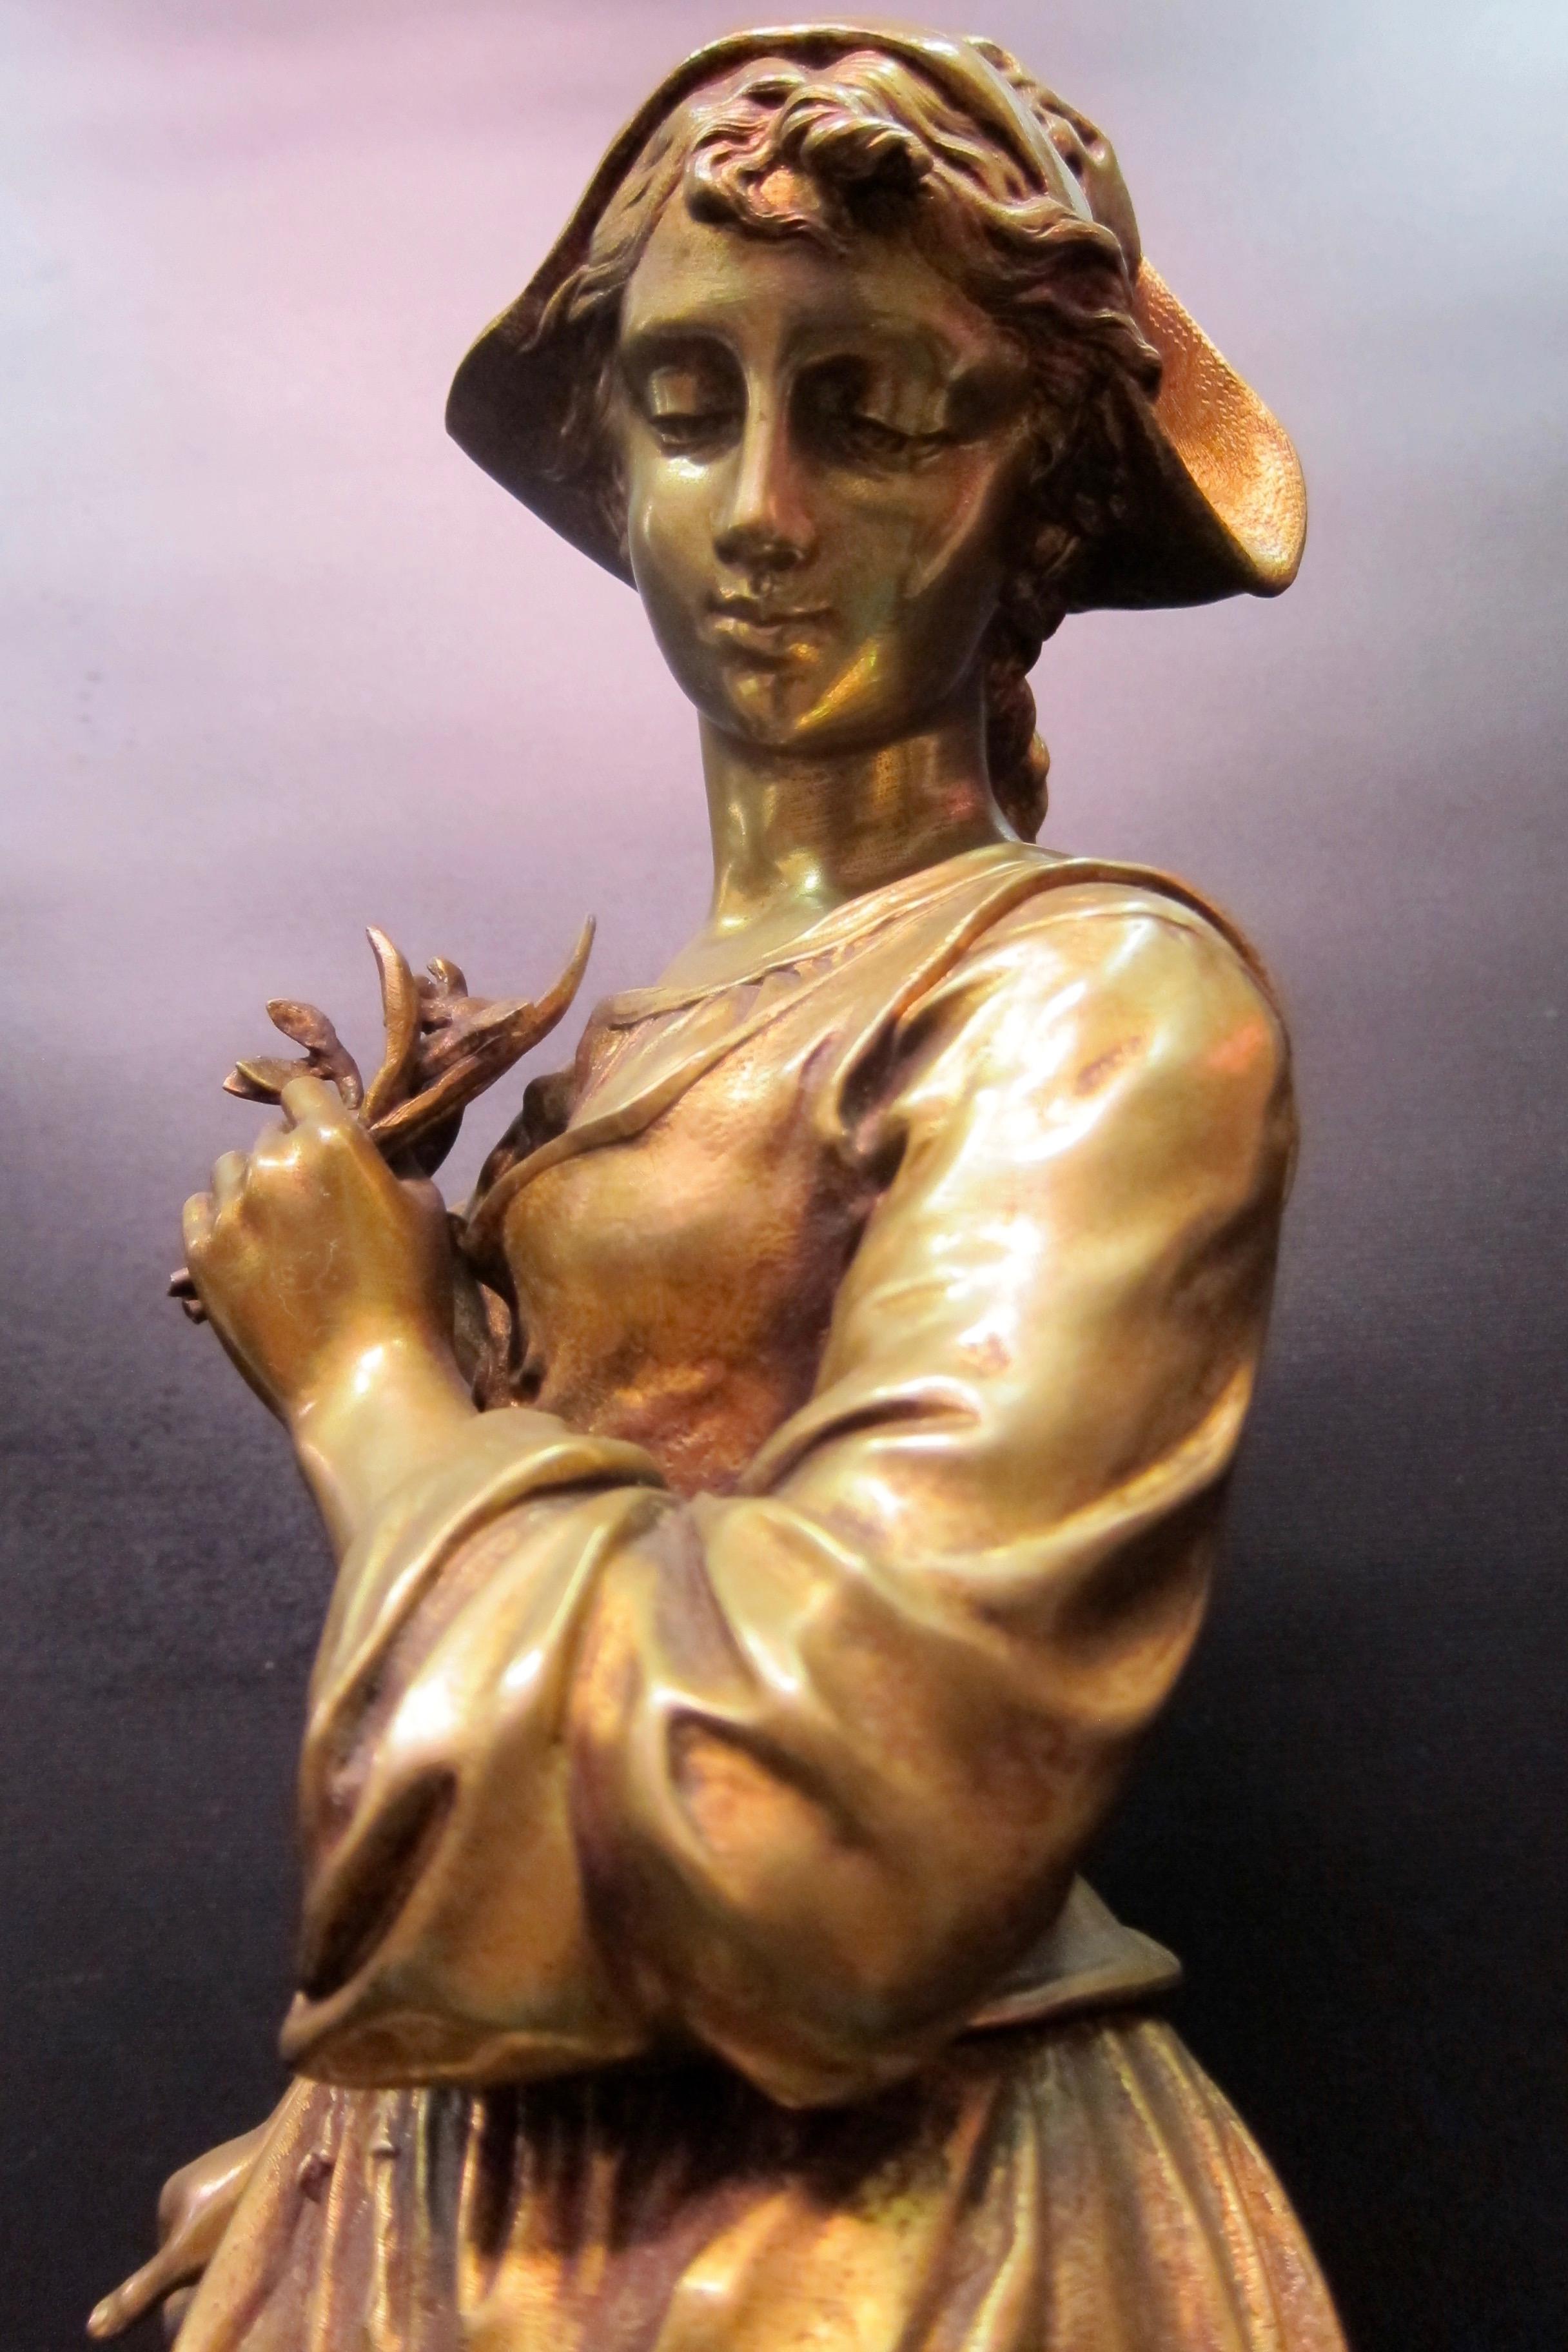 Cette sculpture vintage en bronze d'une jeune fille française vêtue d'un vêtement fluide est signée par l'artiste, E. Tassel. Elle est exceptionnellement bien détaillée de la tête aux pieds. Le sujet jette un regard vers le bas alors qu'il se tient